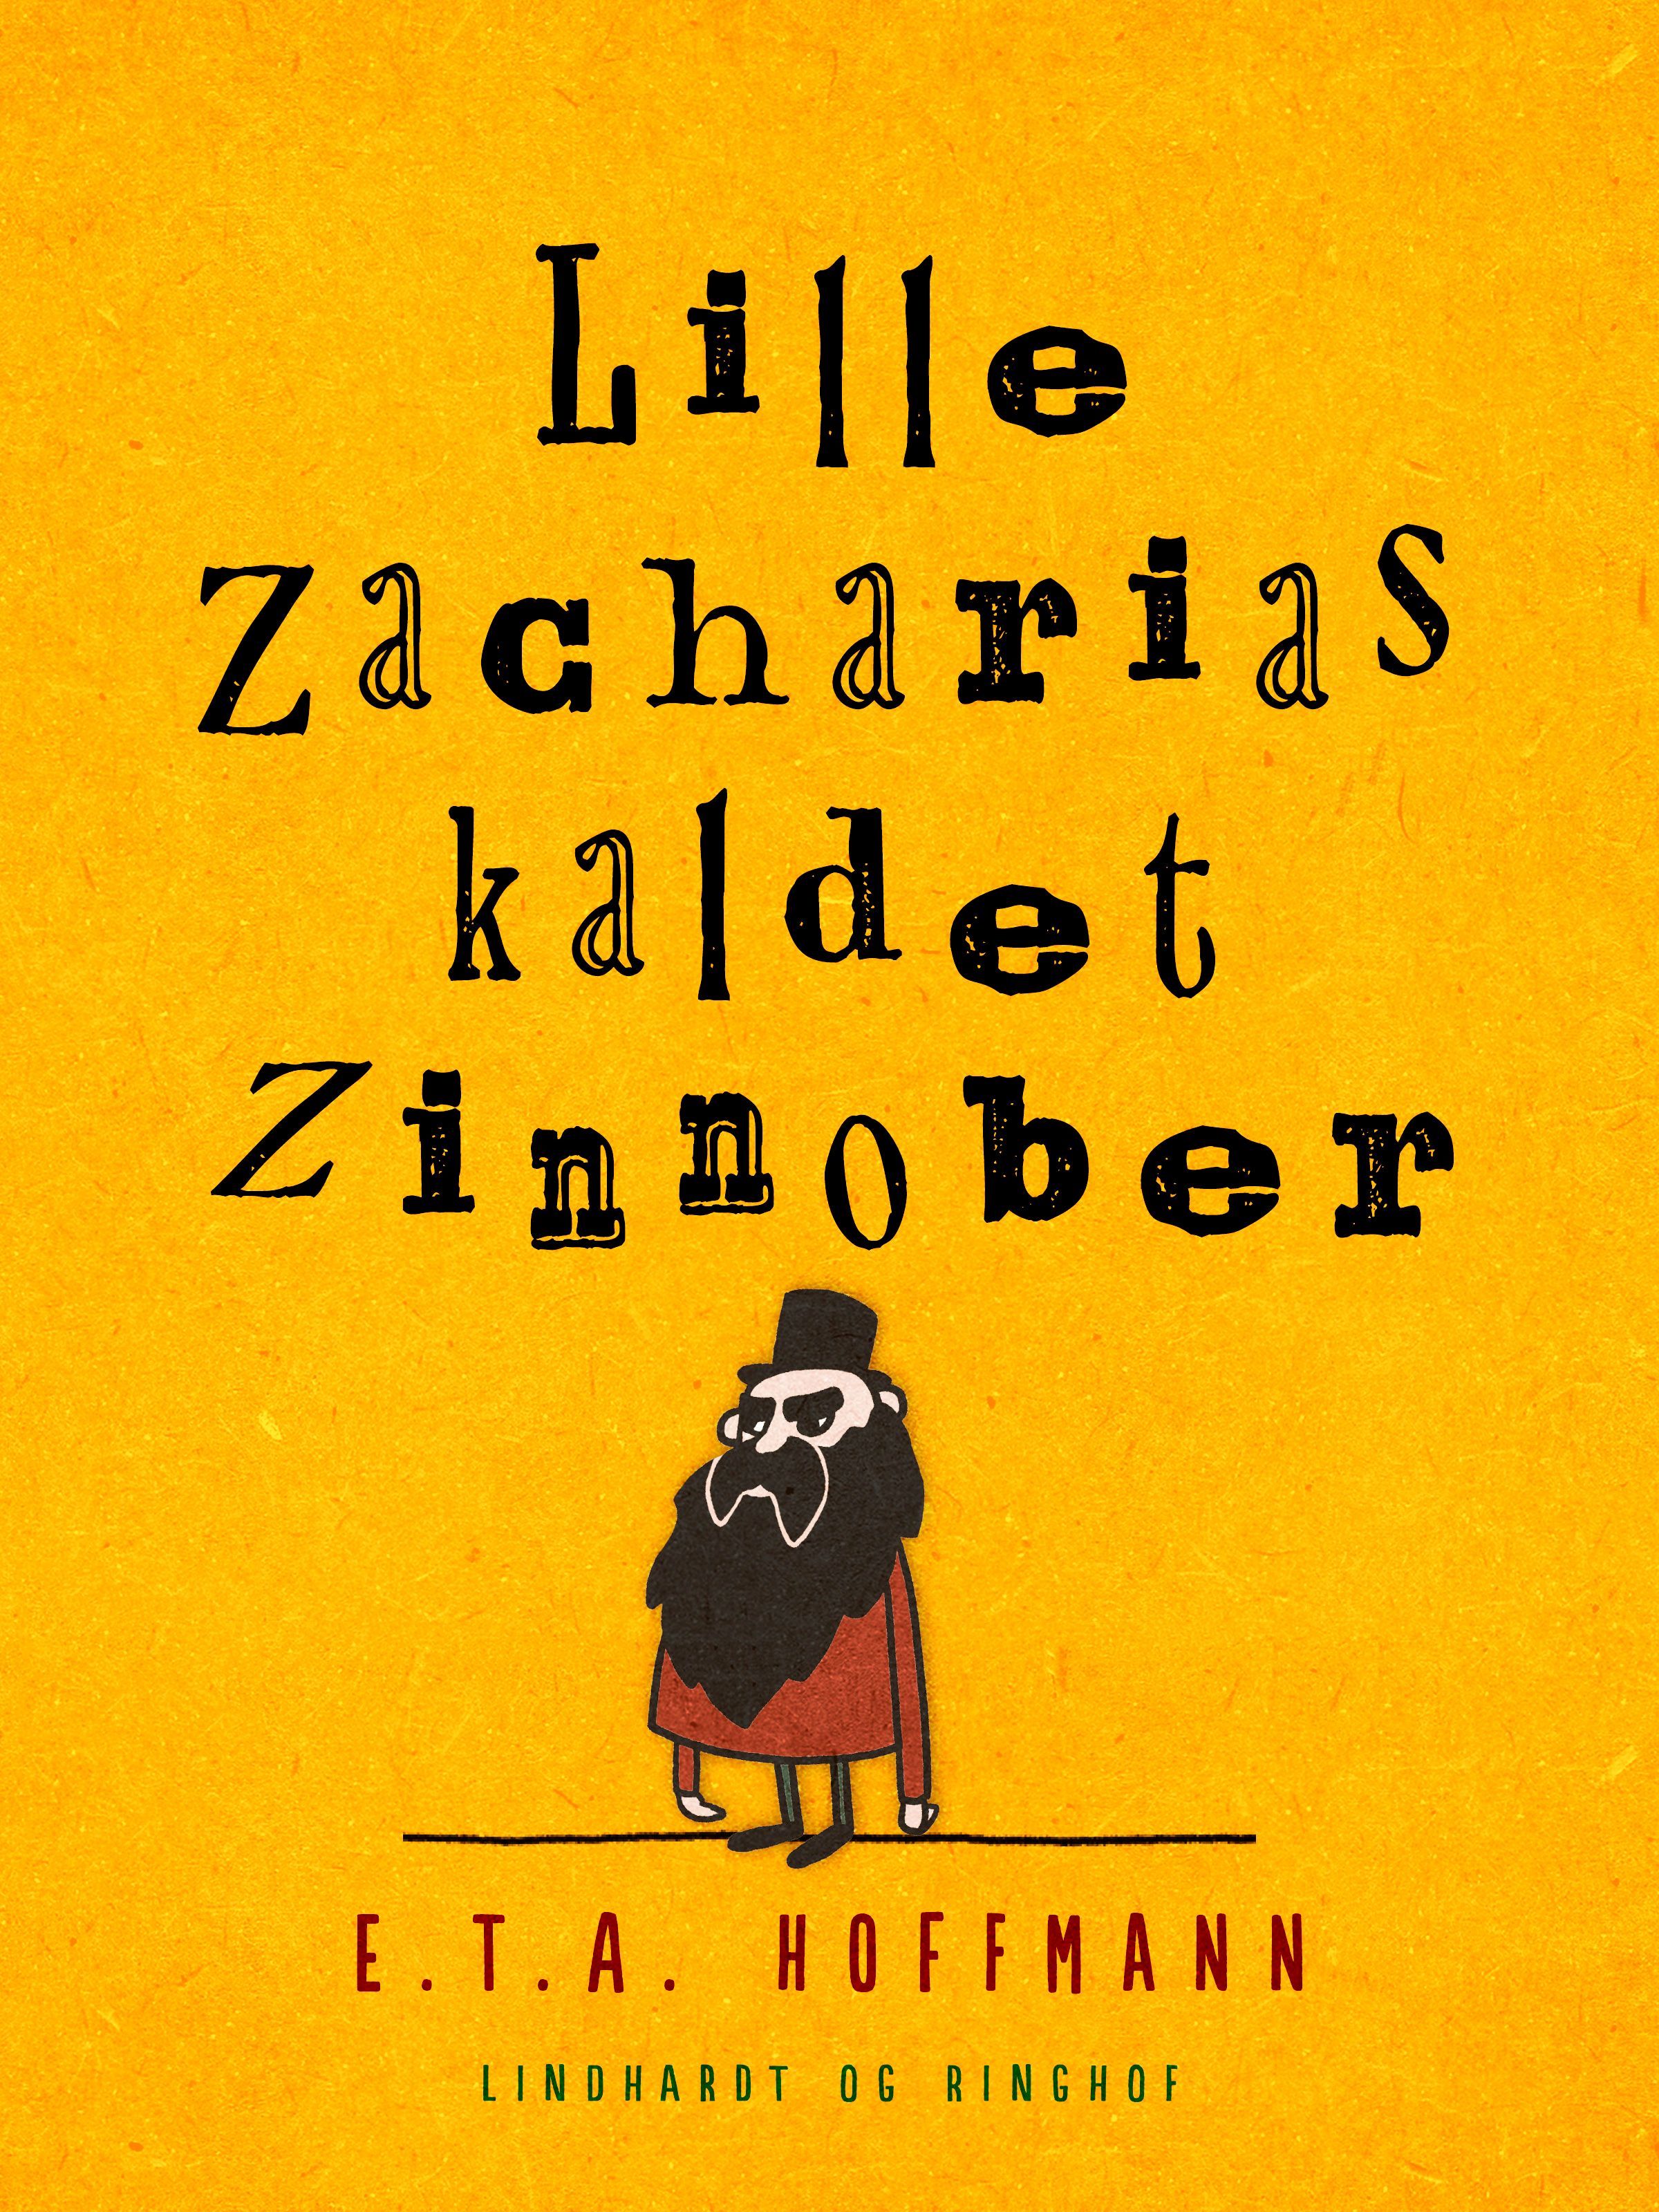 Lille Zacharias kaldet Zinnober, eBook by E.T.A. Hoffmann